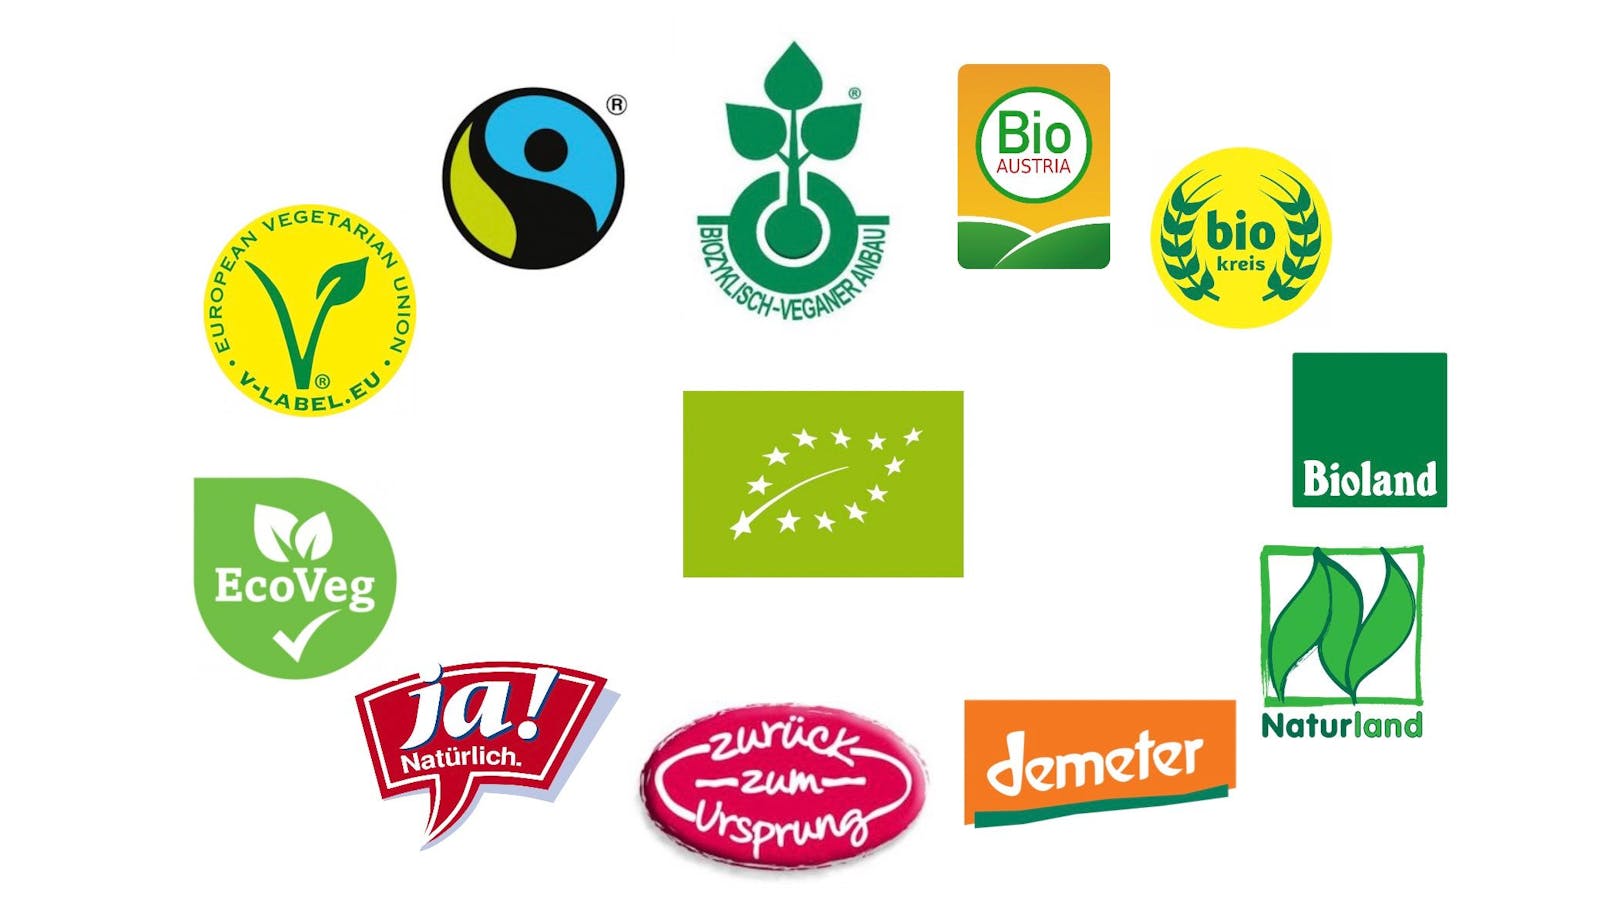 Rund um das EU- Bio Siegel sehen wir weitere bekannte Abbildungen die auf ein Bio-Produkt hinweisen.